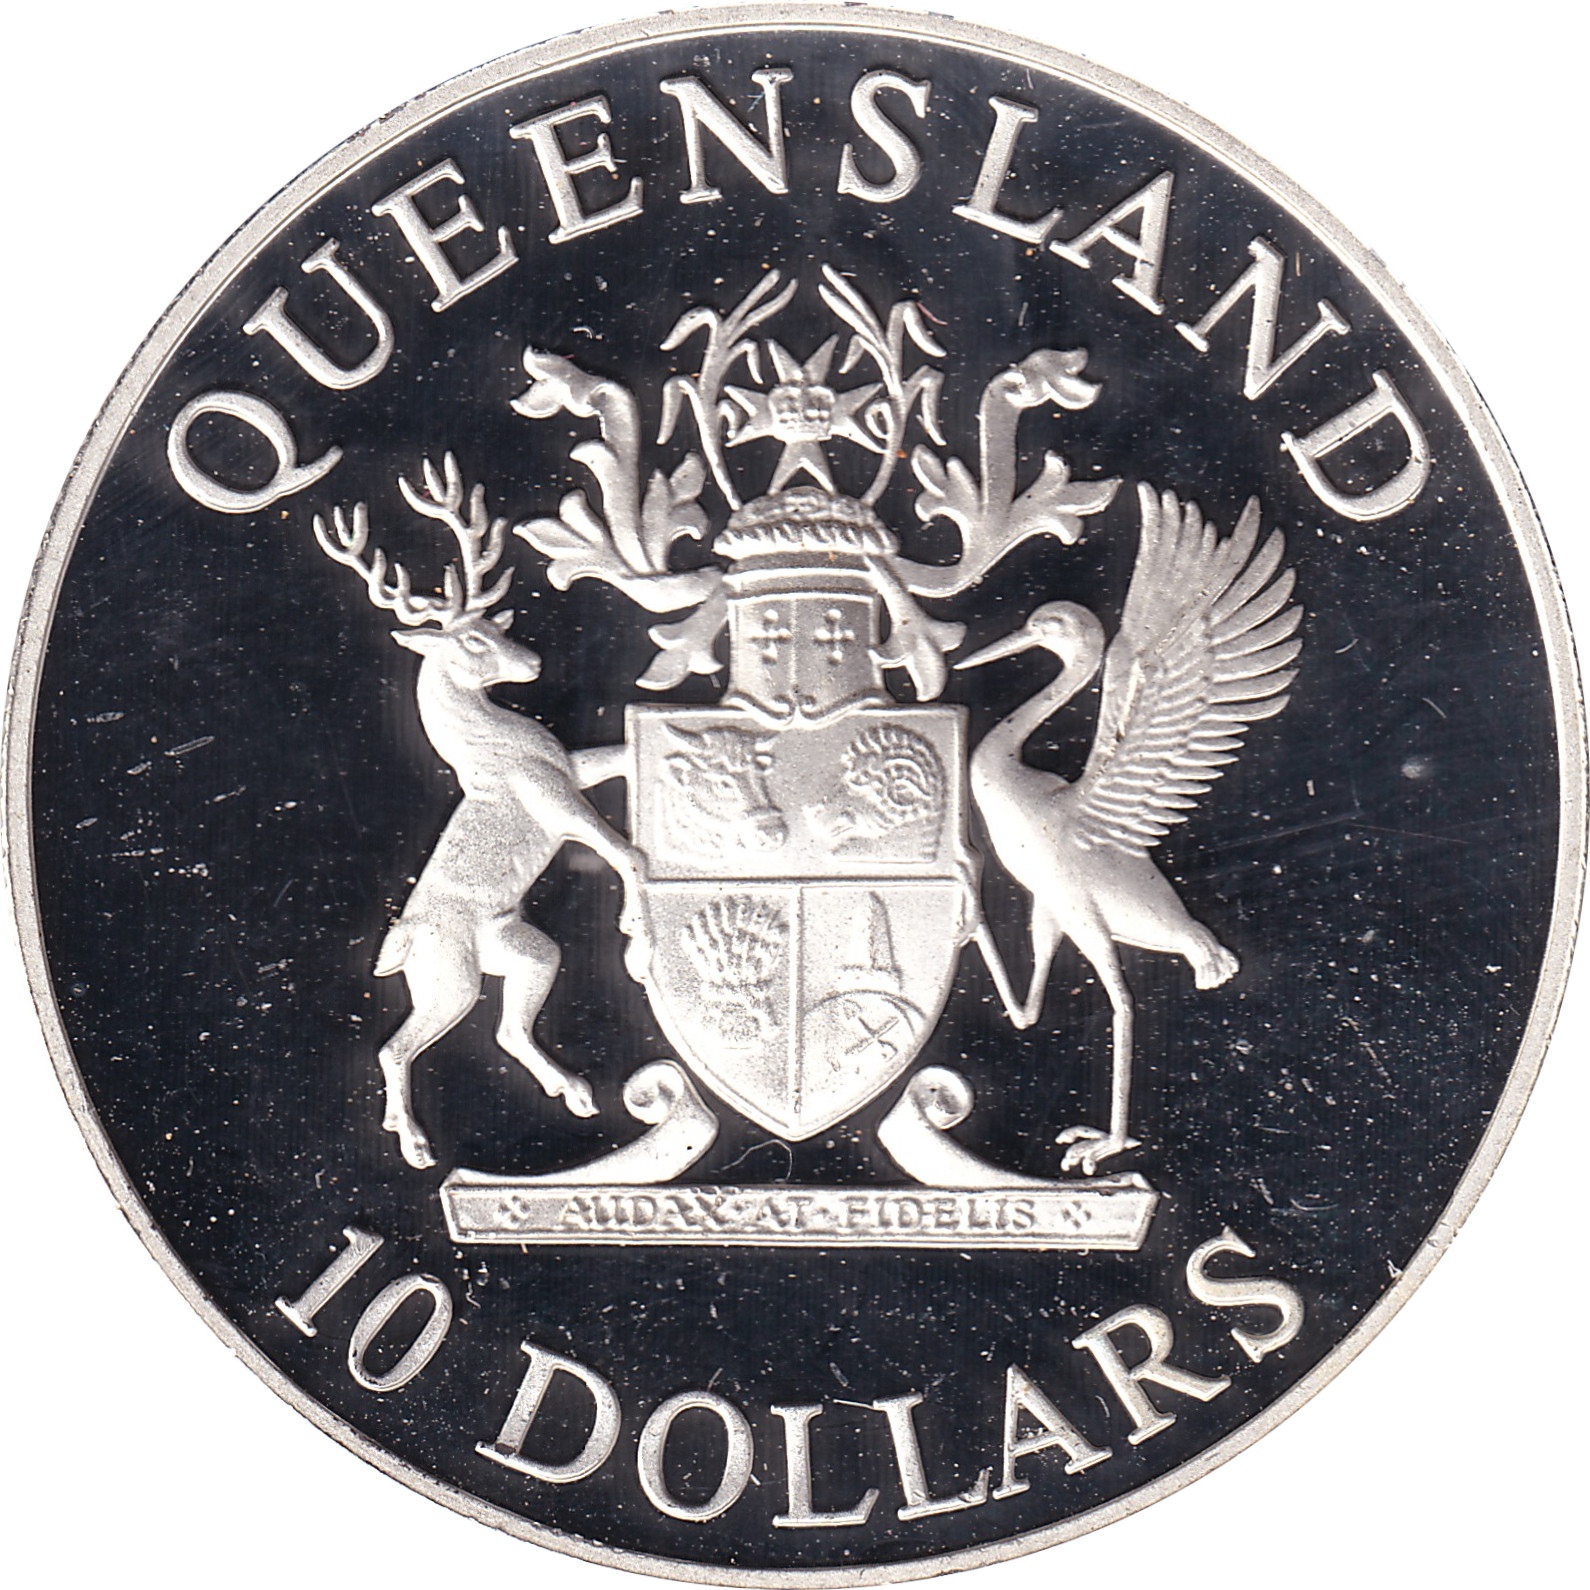 10 dollars - Queensland